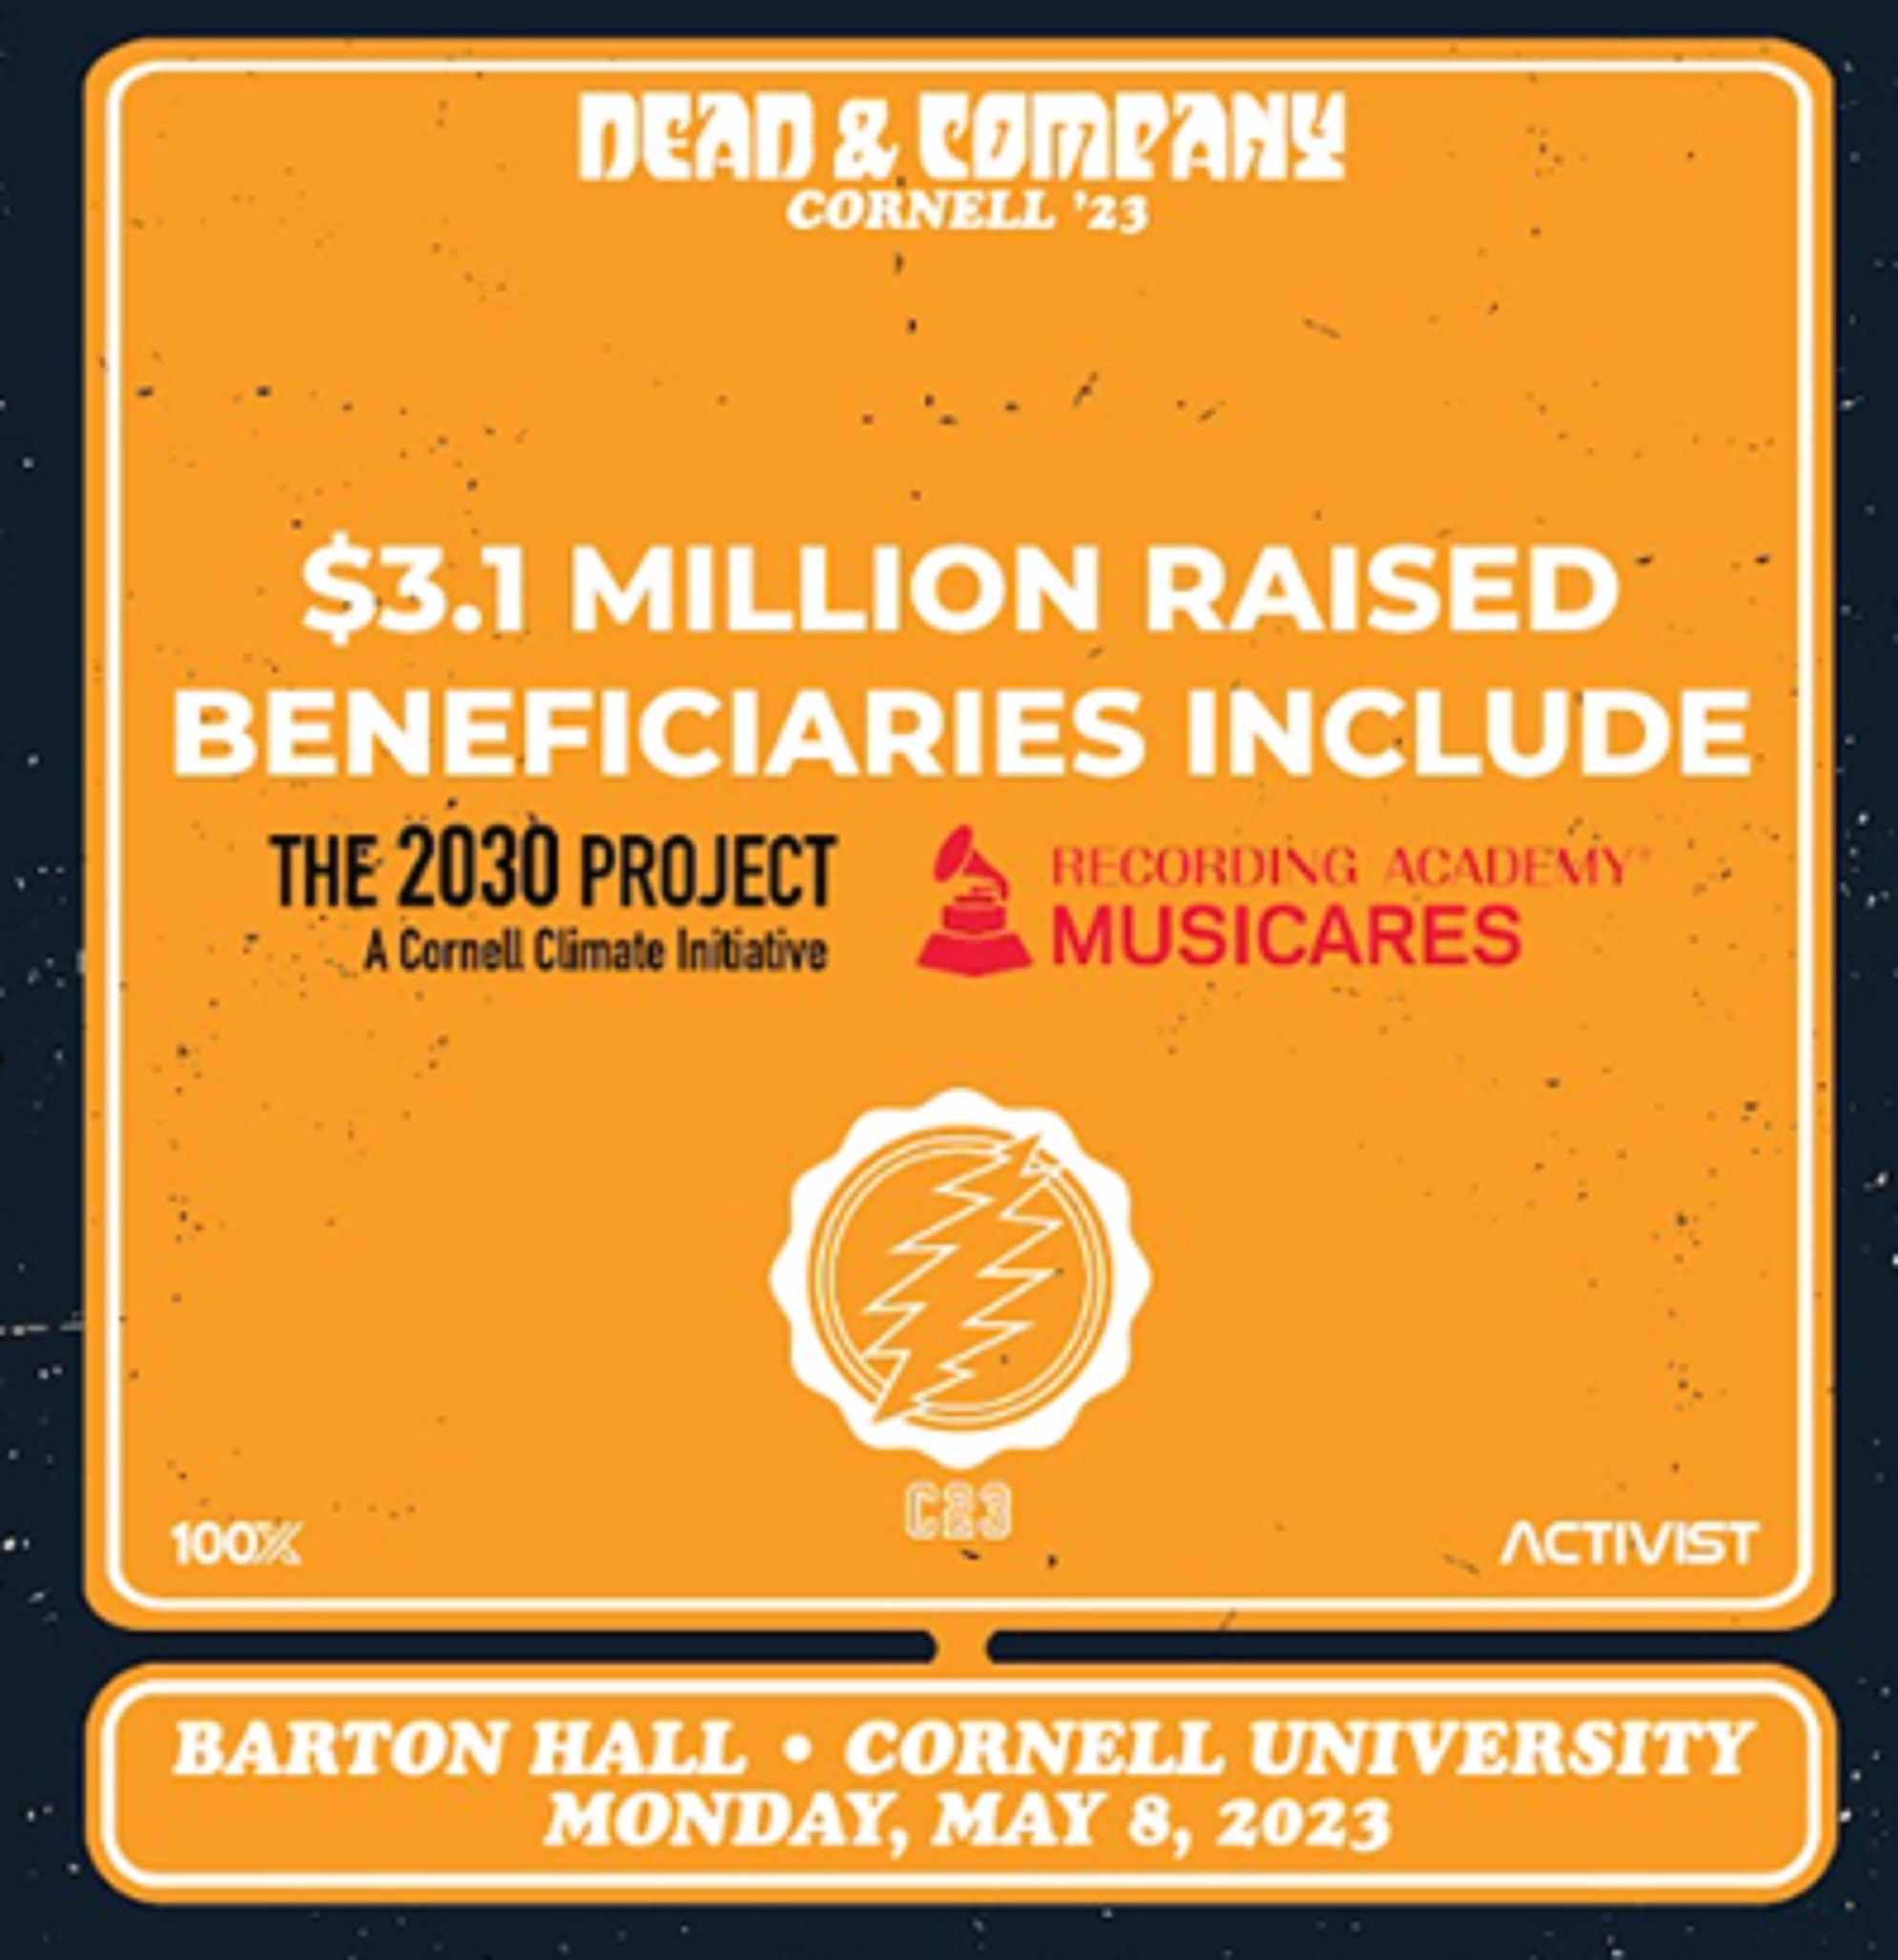 Dead & Company C23 Benefit Concert Raises $3.1 Million for Non-Profits